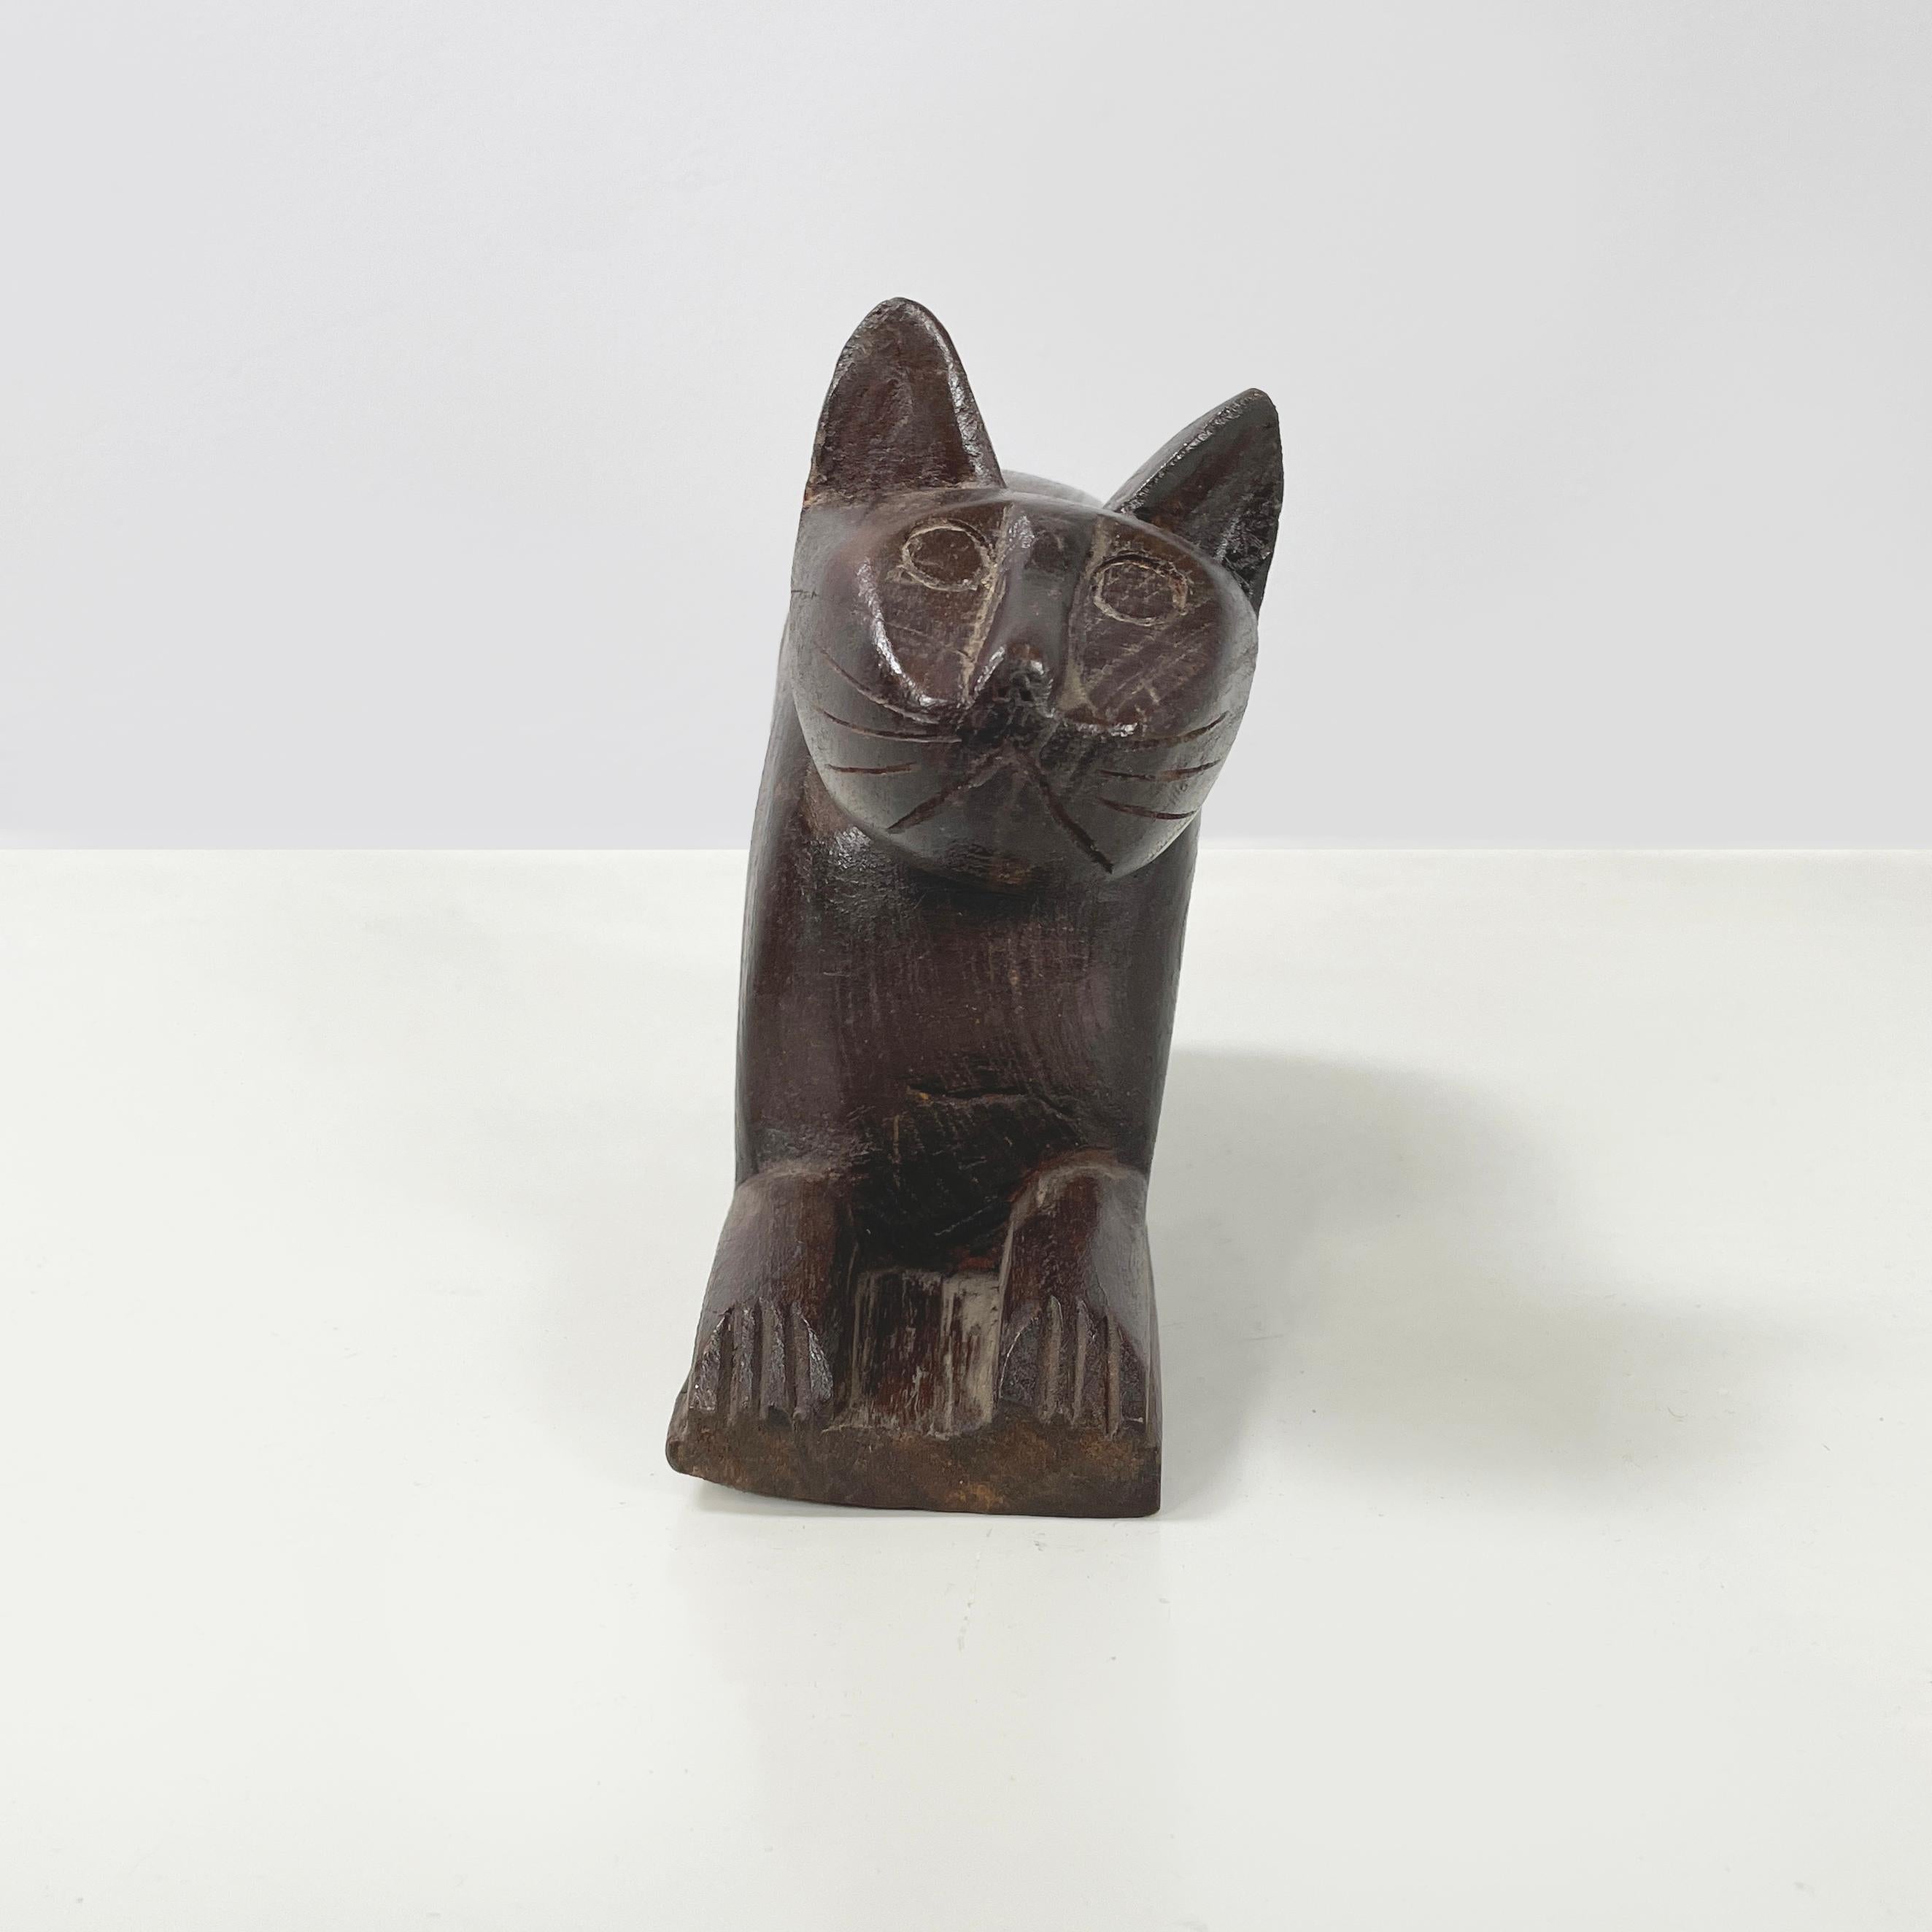 Boîte ou porte-objets chinois antique en bois pour chat, années 1920
Boîte à bijoux avec compartiment rétractable en forme de chat couché, entièrement en bois. Les traits du chat sont stylisés. Le compartiment coulissant se trouve sur le ventre du